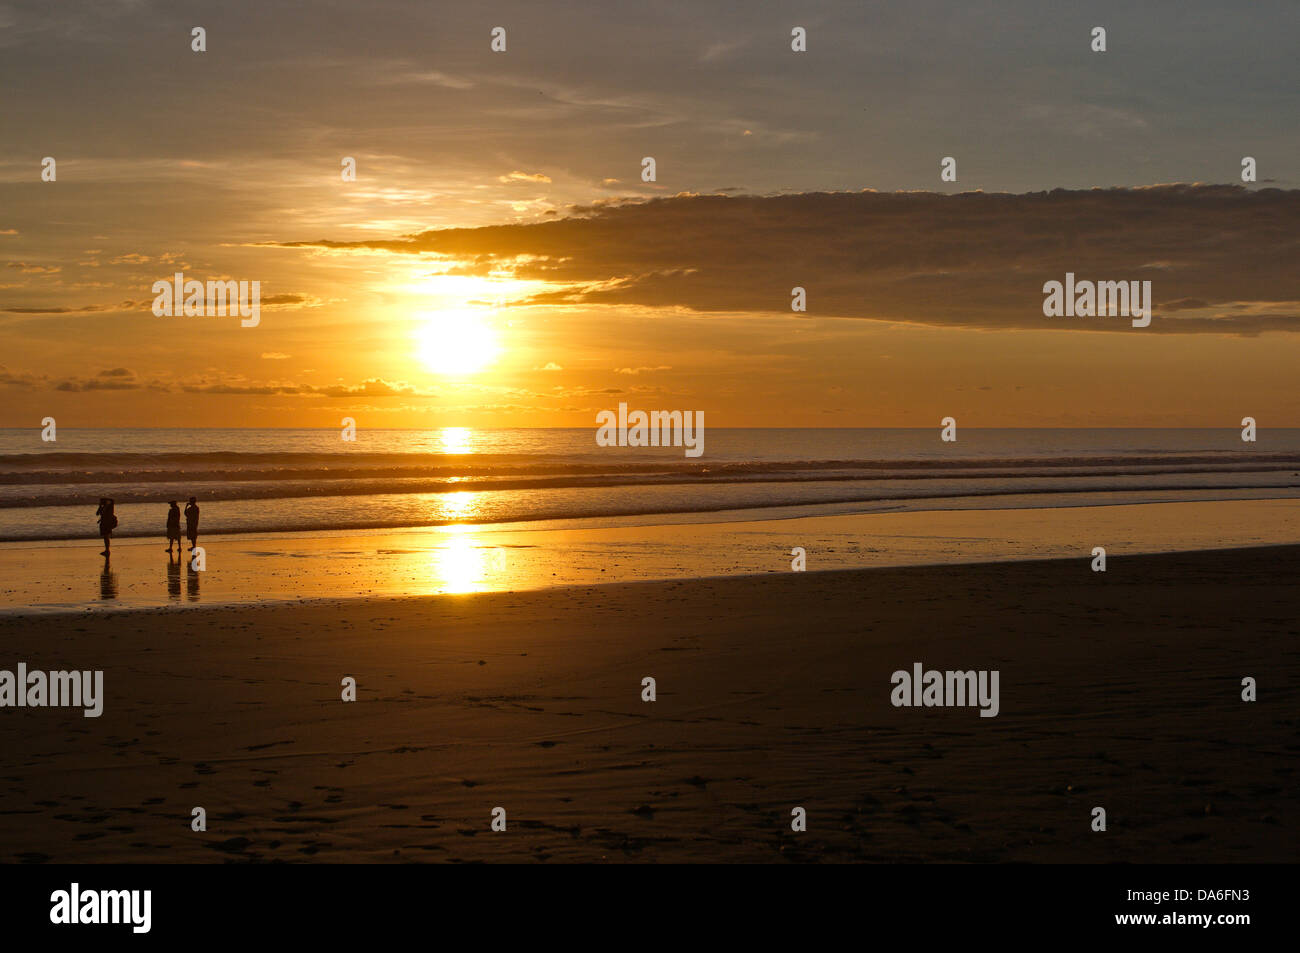 Sonnenuntergang, Sonne, orange, zurück Licht, romantisch, stimmungsvoll, Ruhe, abends, Costa Rica, Pacific, Meer, Natur Stockfoto